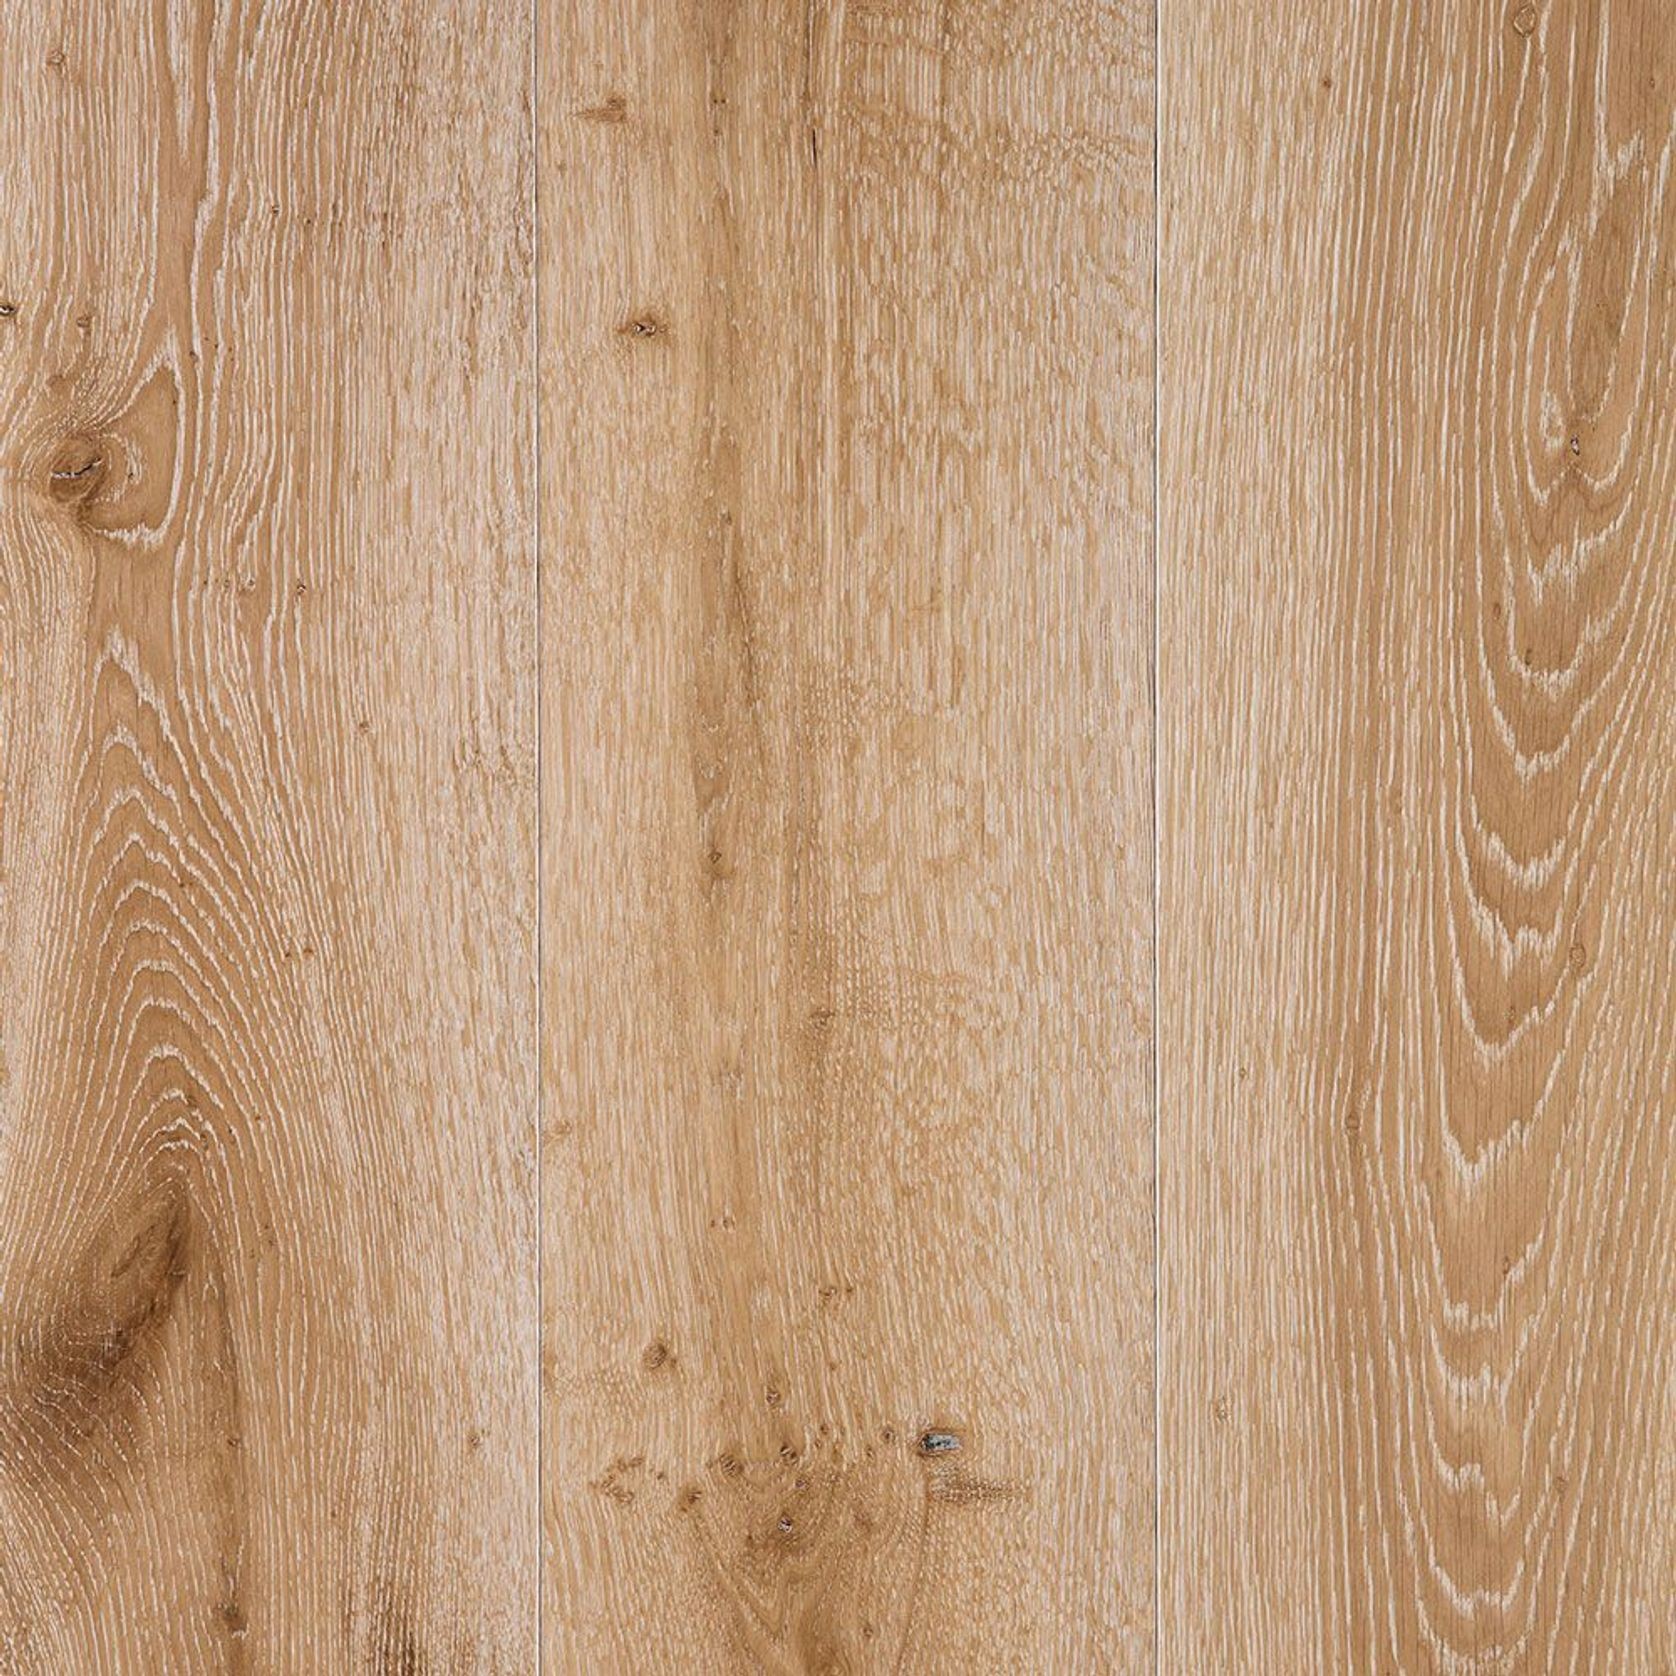 SATU "White Smoked" European Oak Engineered Floorboards gallery detail image